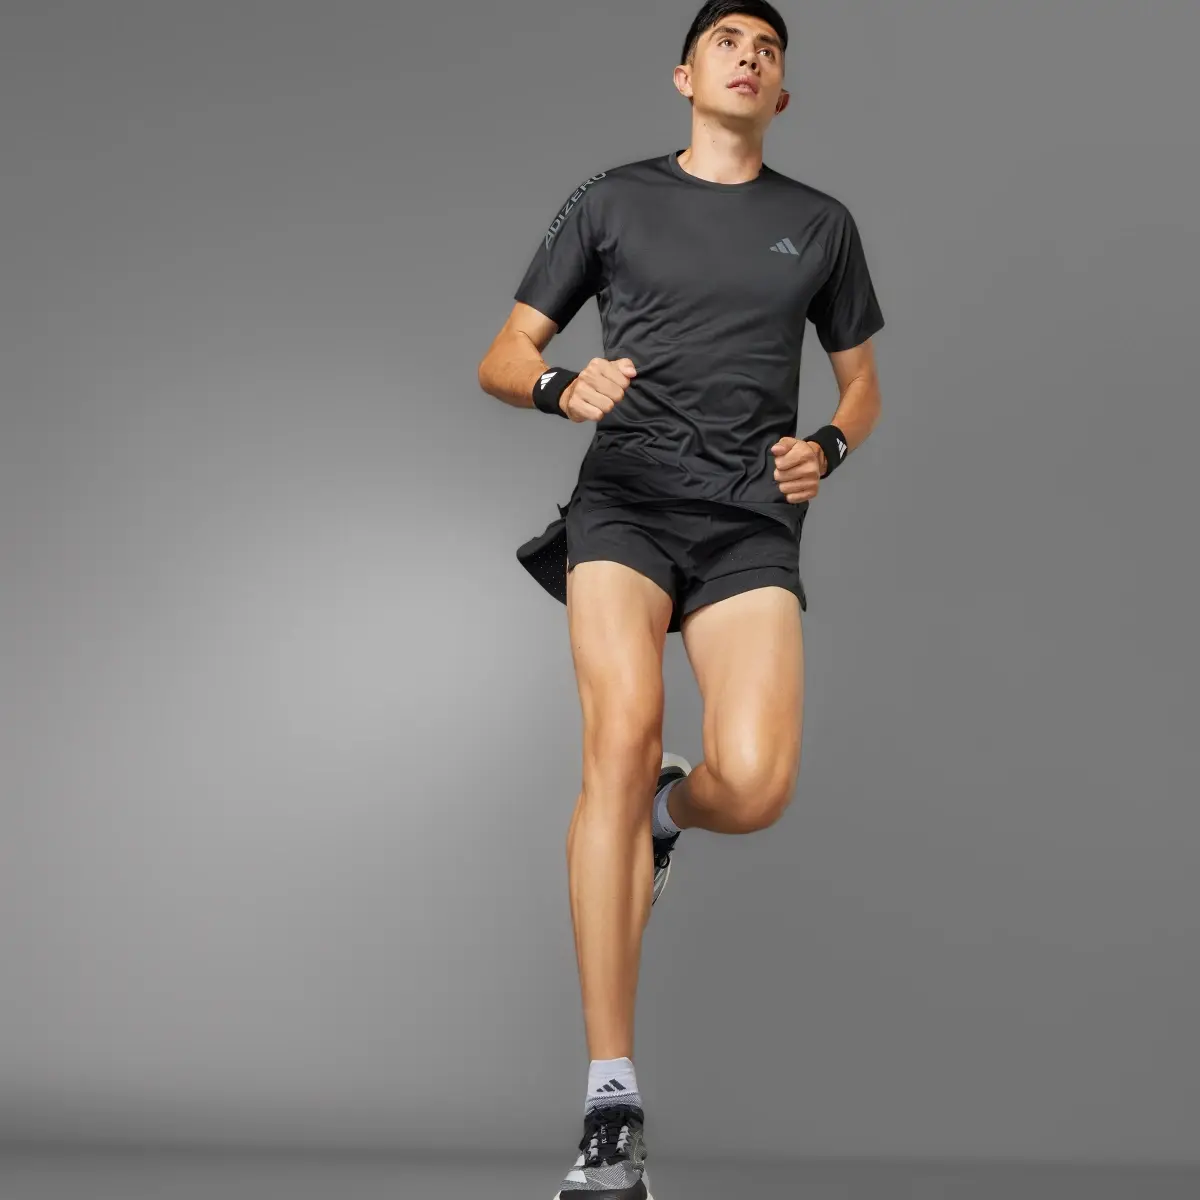 Adidas Adizero Running T-Shirt. 3